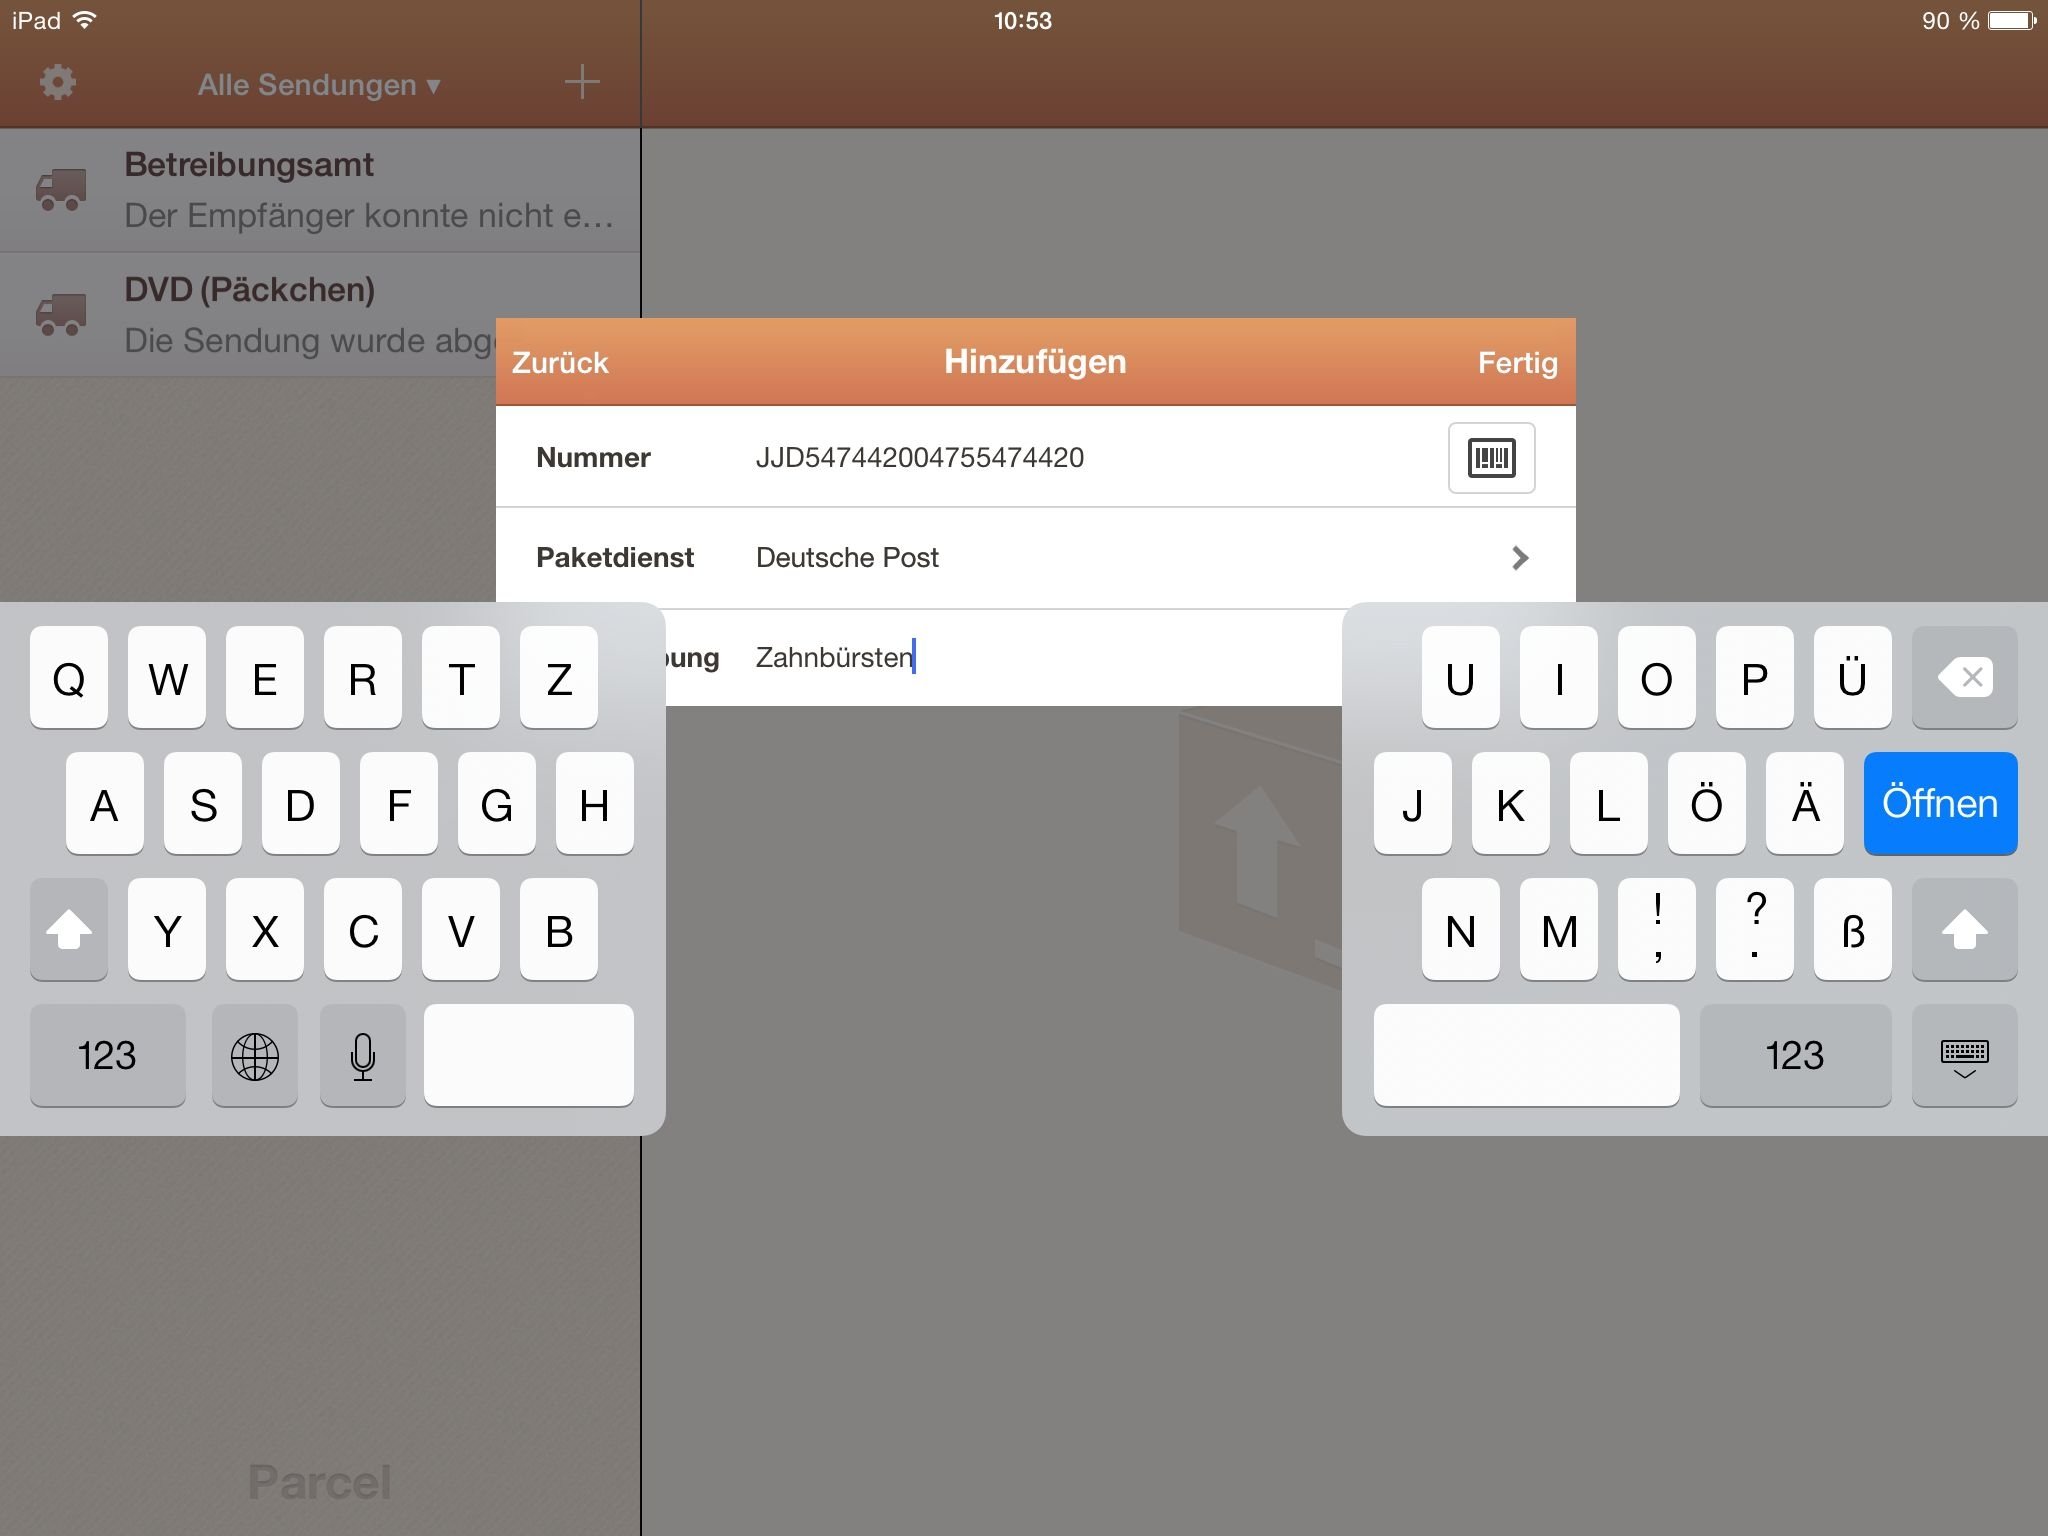 iPad Tastatur teilen andocken schreiben 10 Finger 2